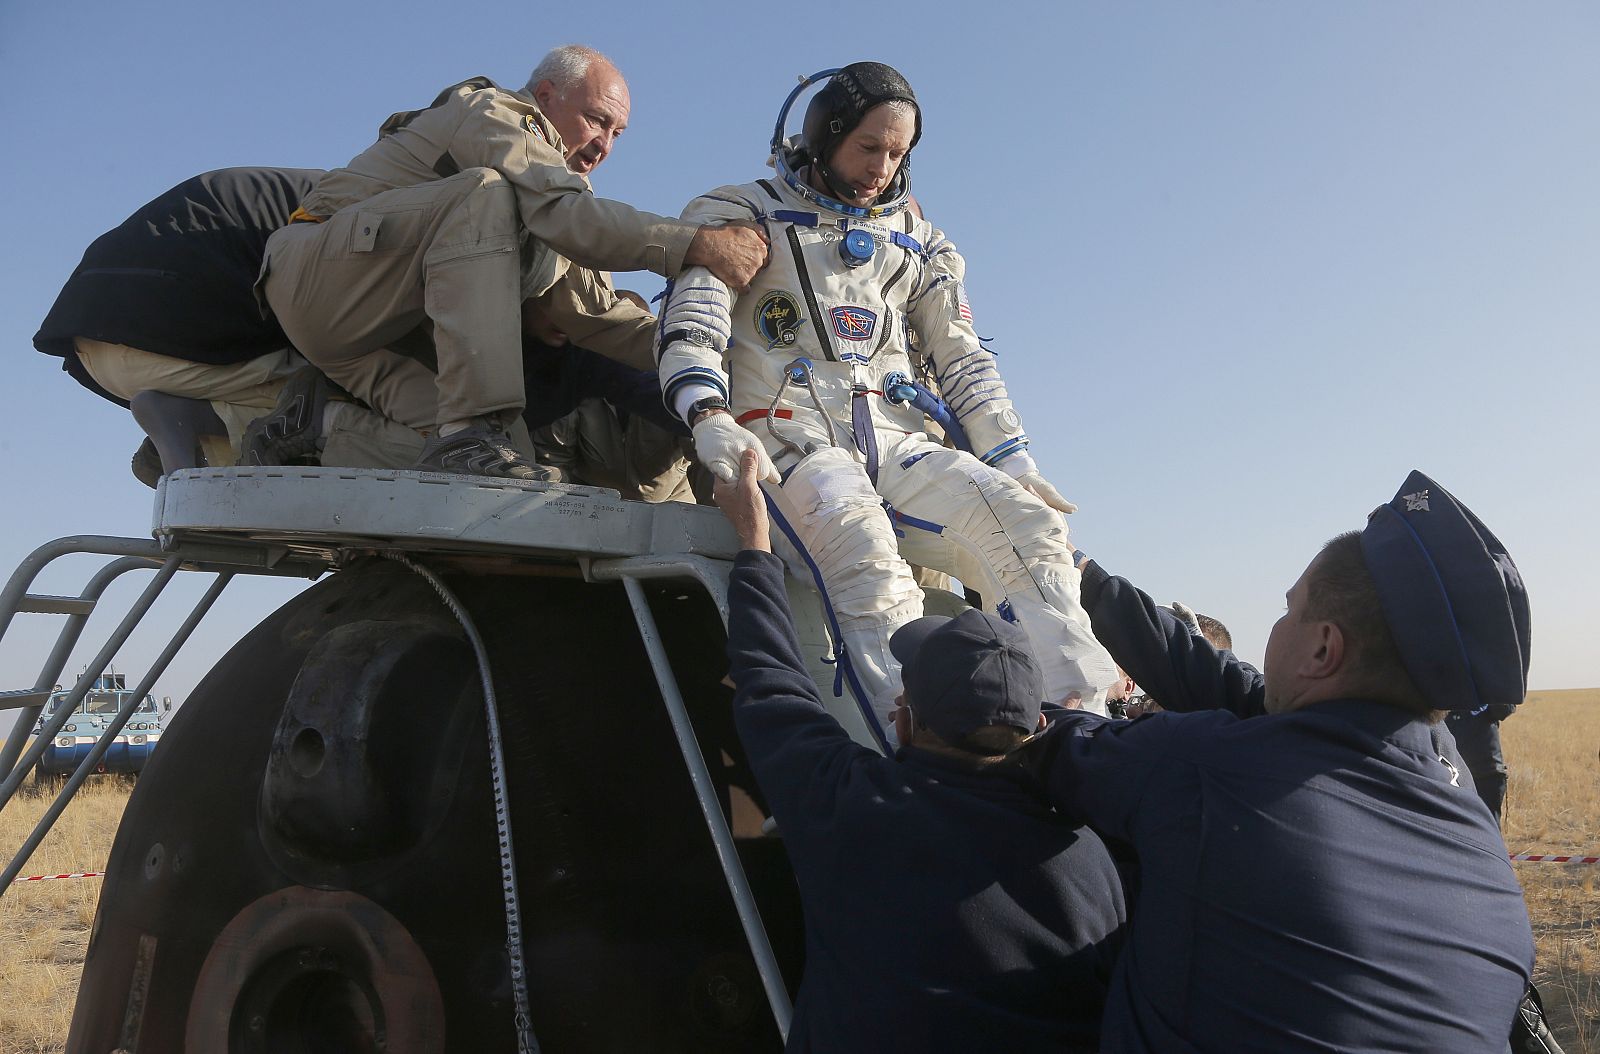 Un astronauta estadounidense desciende de una cápsula Soyuz tras el aterrizaje de vuelta a la tierra.